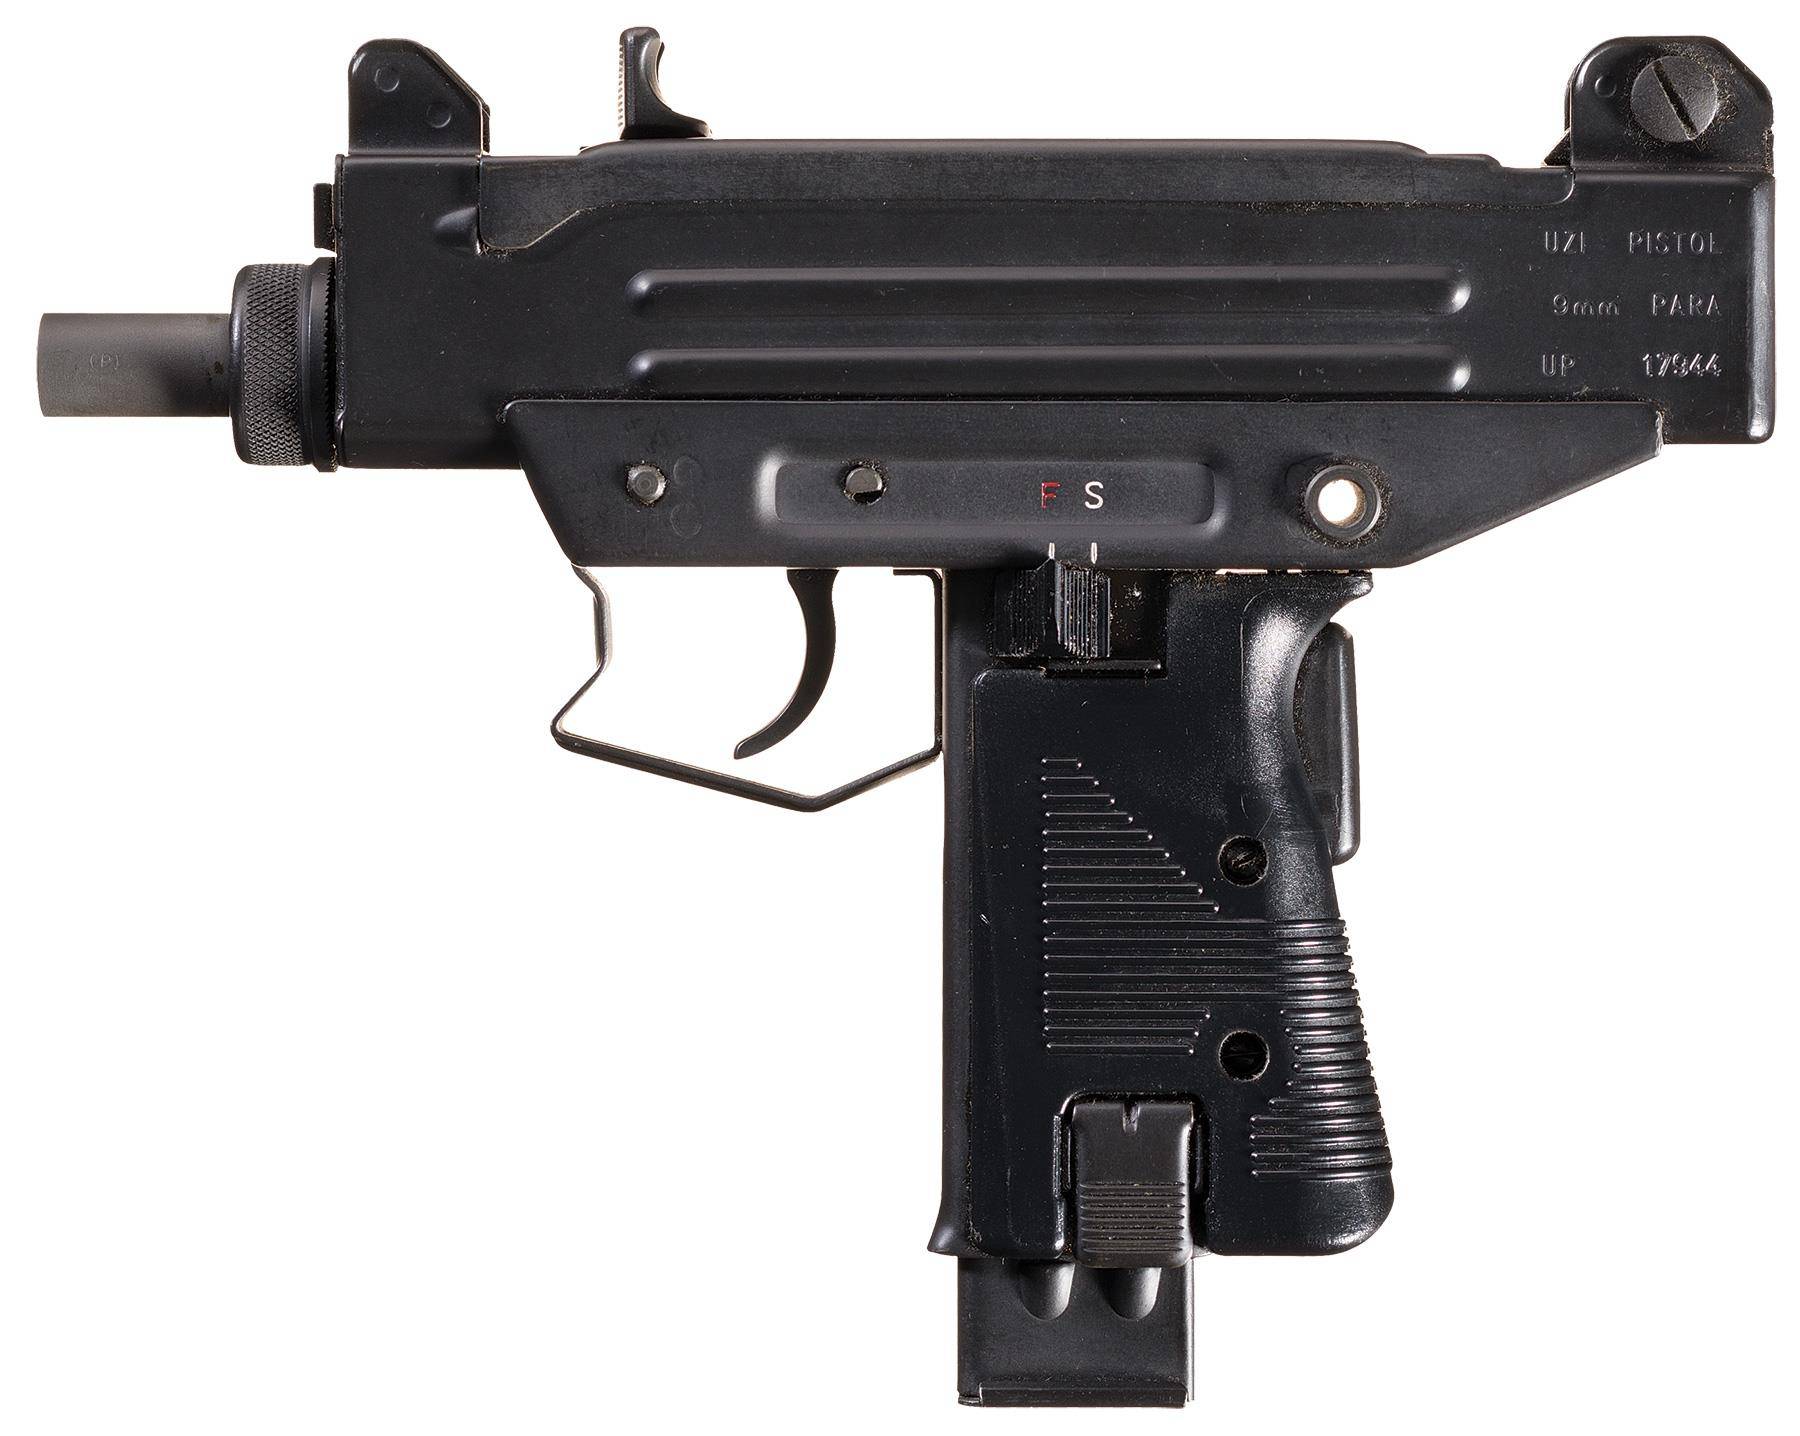 Пистолет-пулемет узи, технические характеристики ттх израильского автомата uzi, размеры, устройство и скорострельность оружия